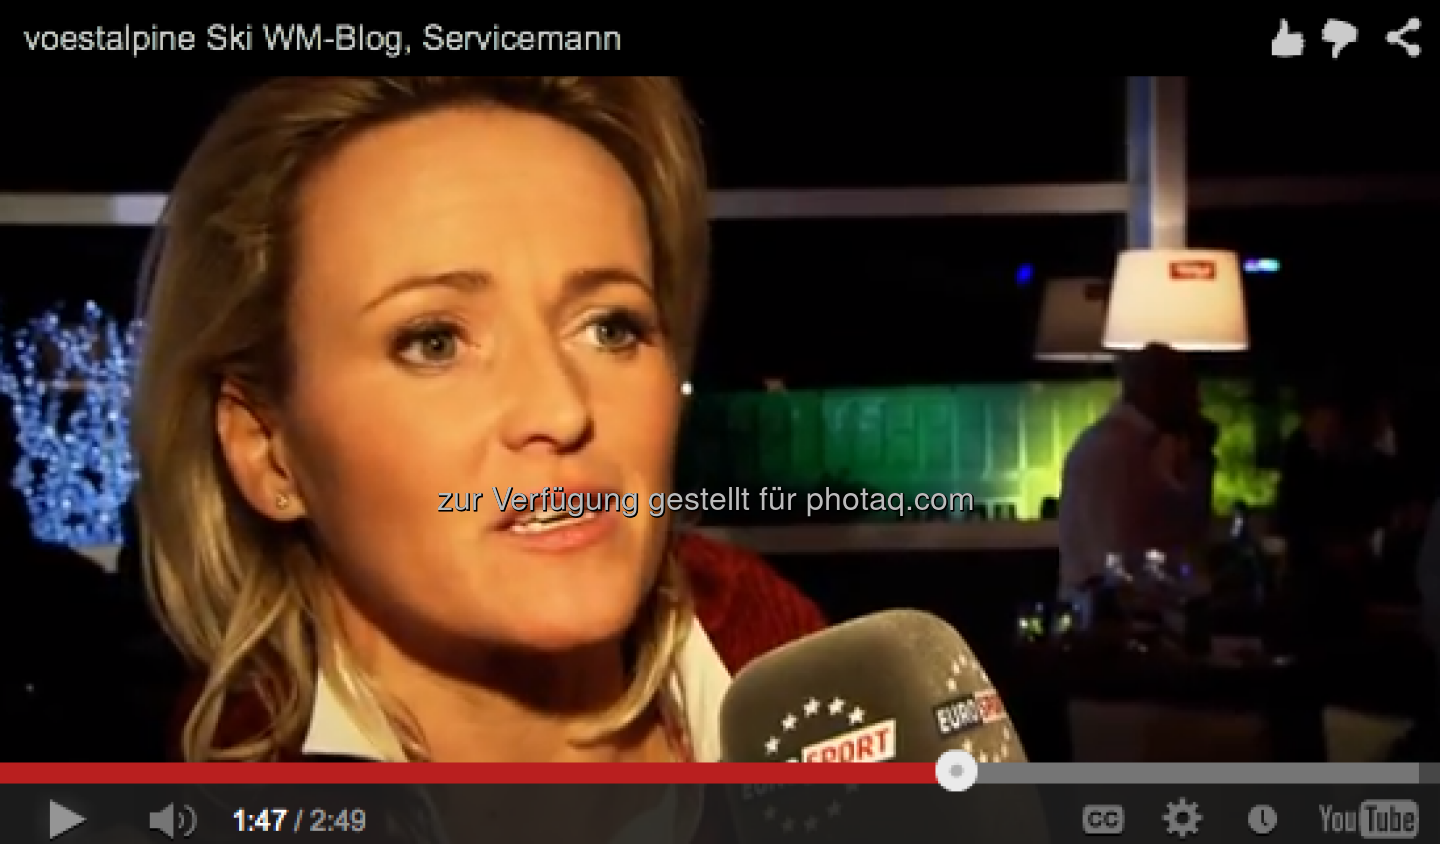 Alexandra Meissnitzer sagt, wie wichtig ihr Servicemann war http://voestalpine-wm-blog.at/2013/02/15/wie-wichtig-ist-der-service-mann/#.UR4-3I7aK_Q